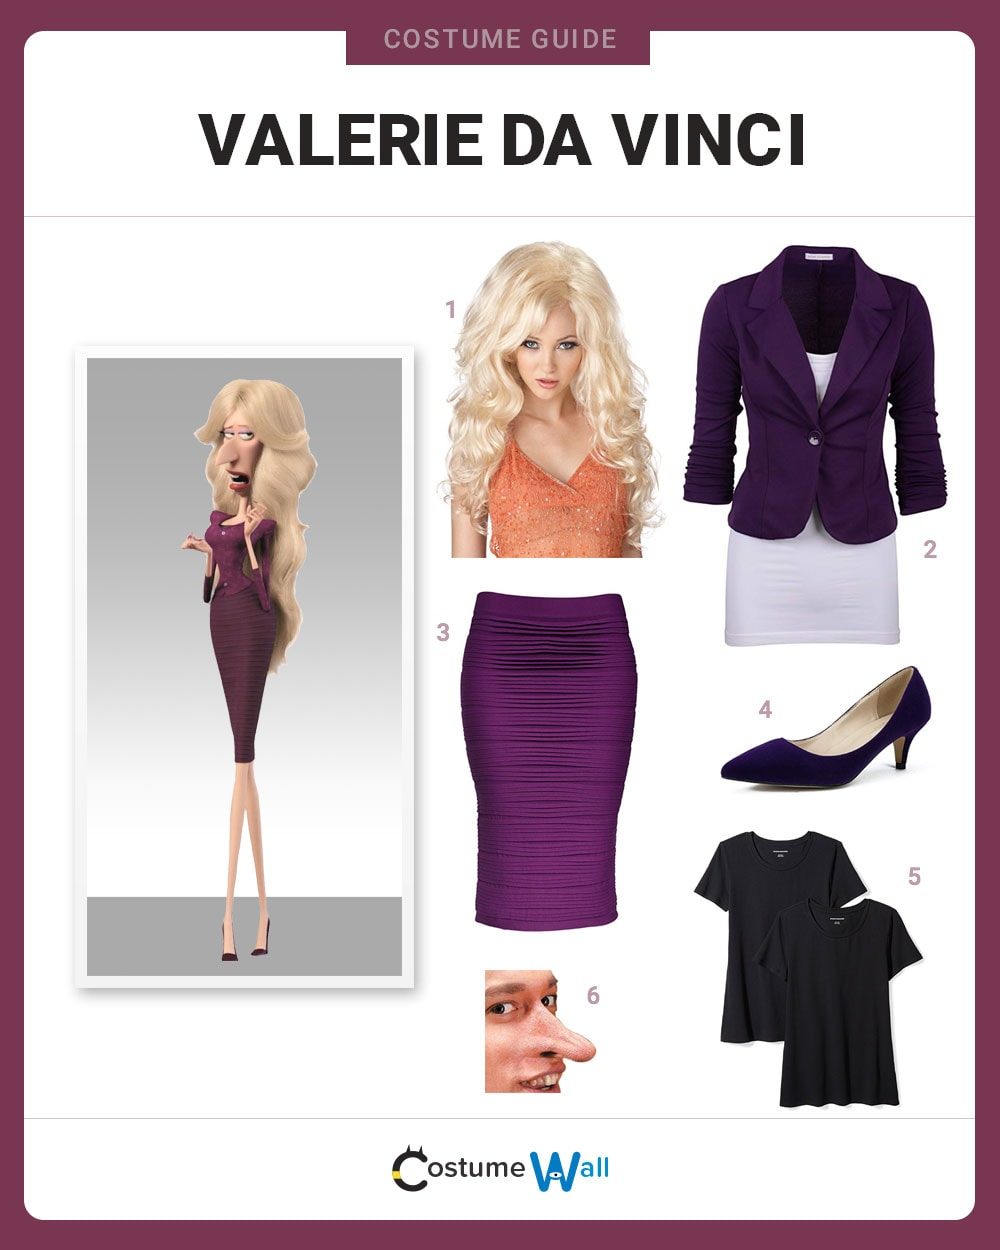 Valerie Da Vinci Costume Guide